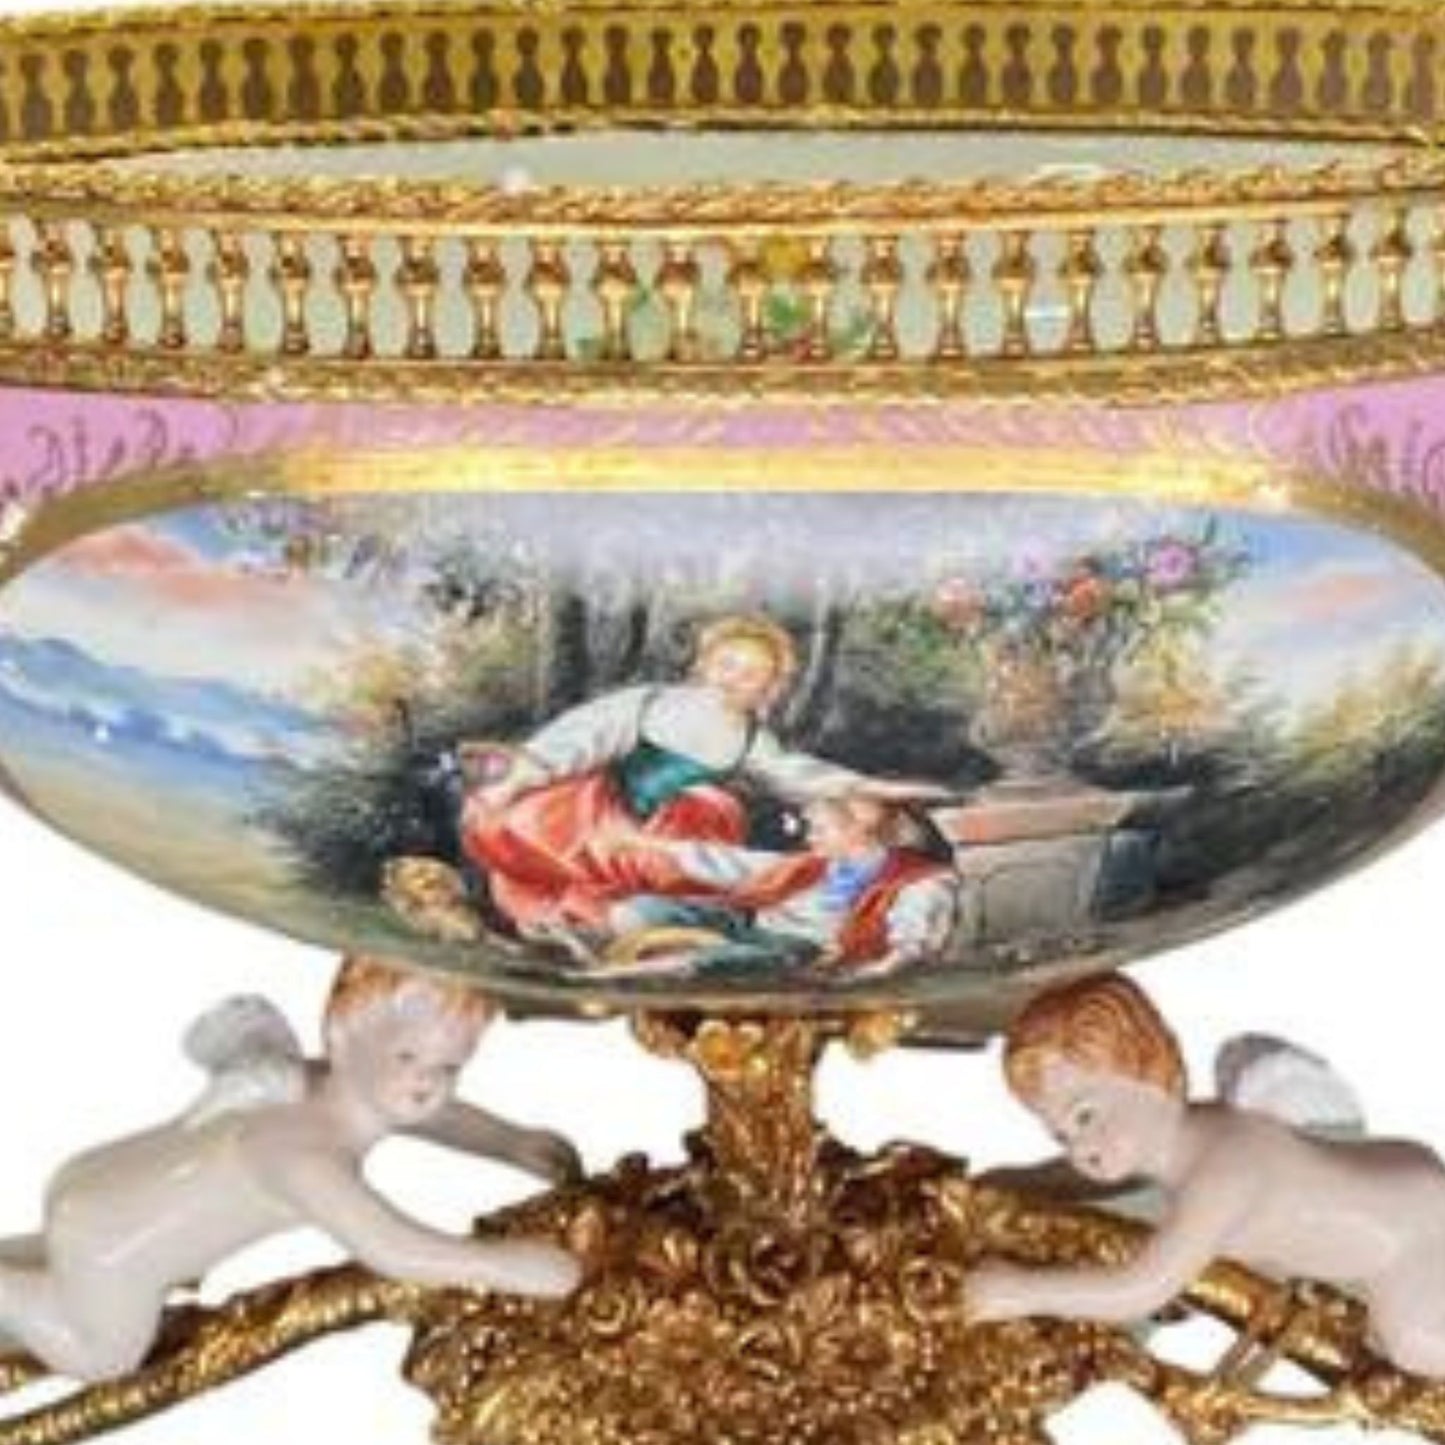 Romantic Porcelain and Bronze Serving Bowl